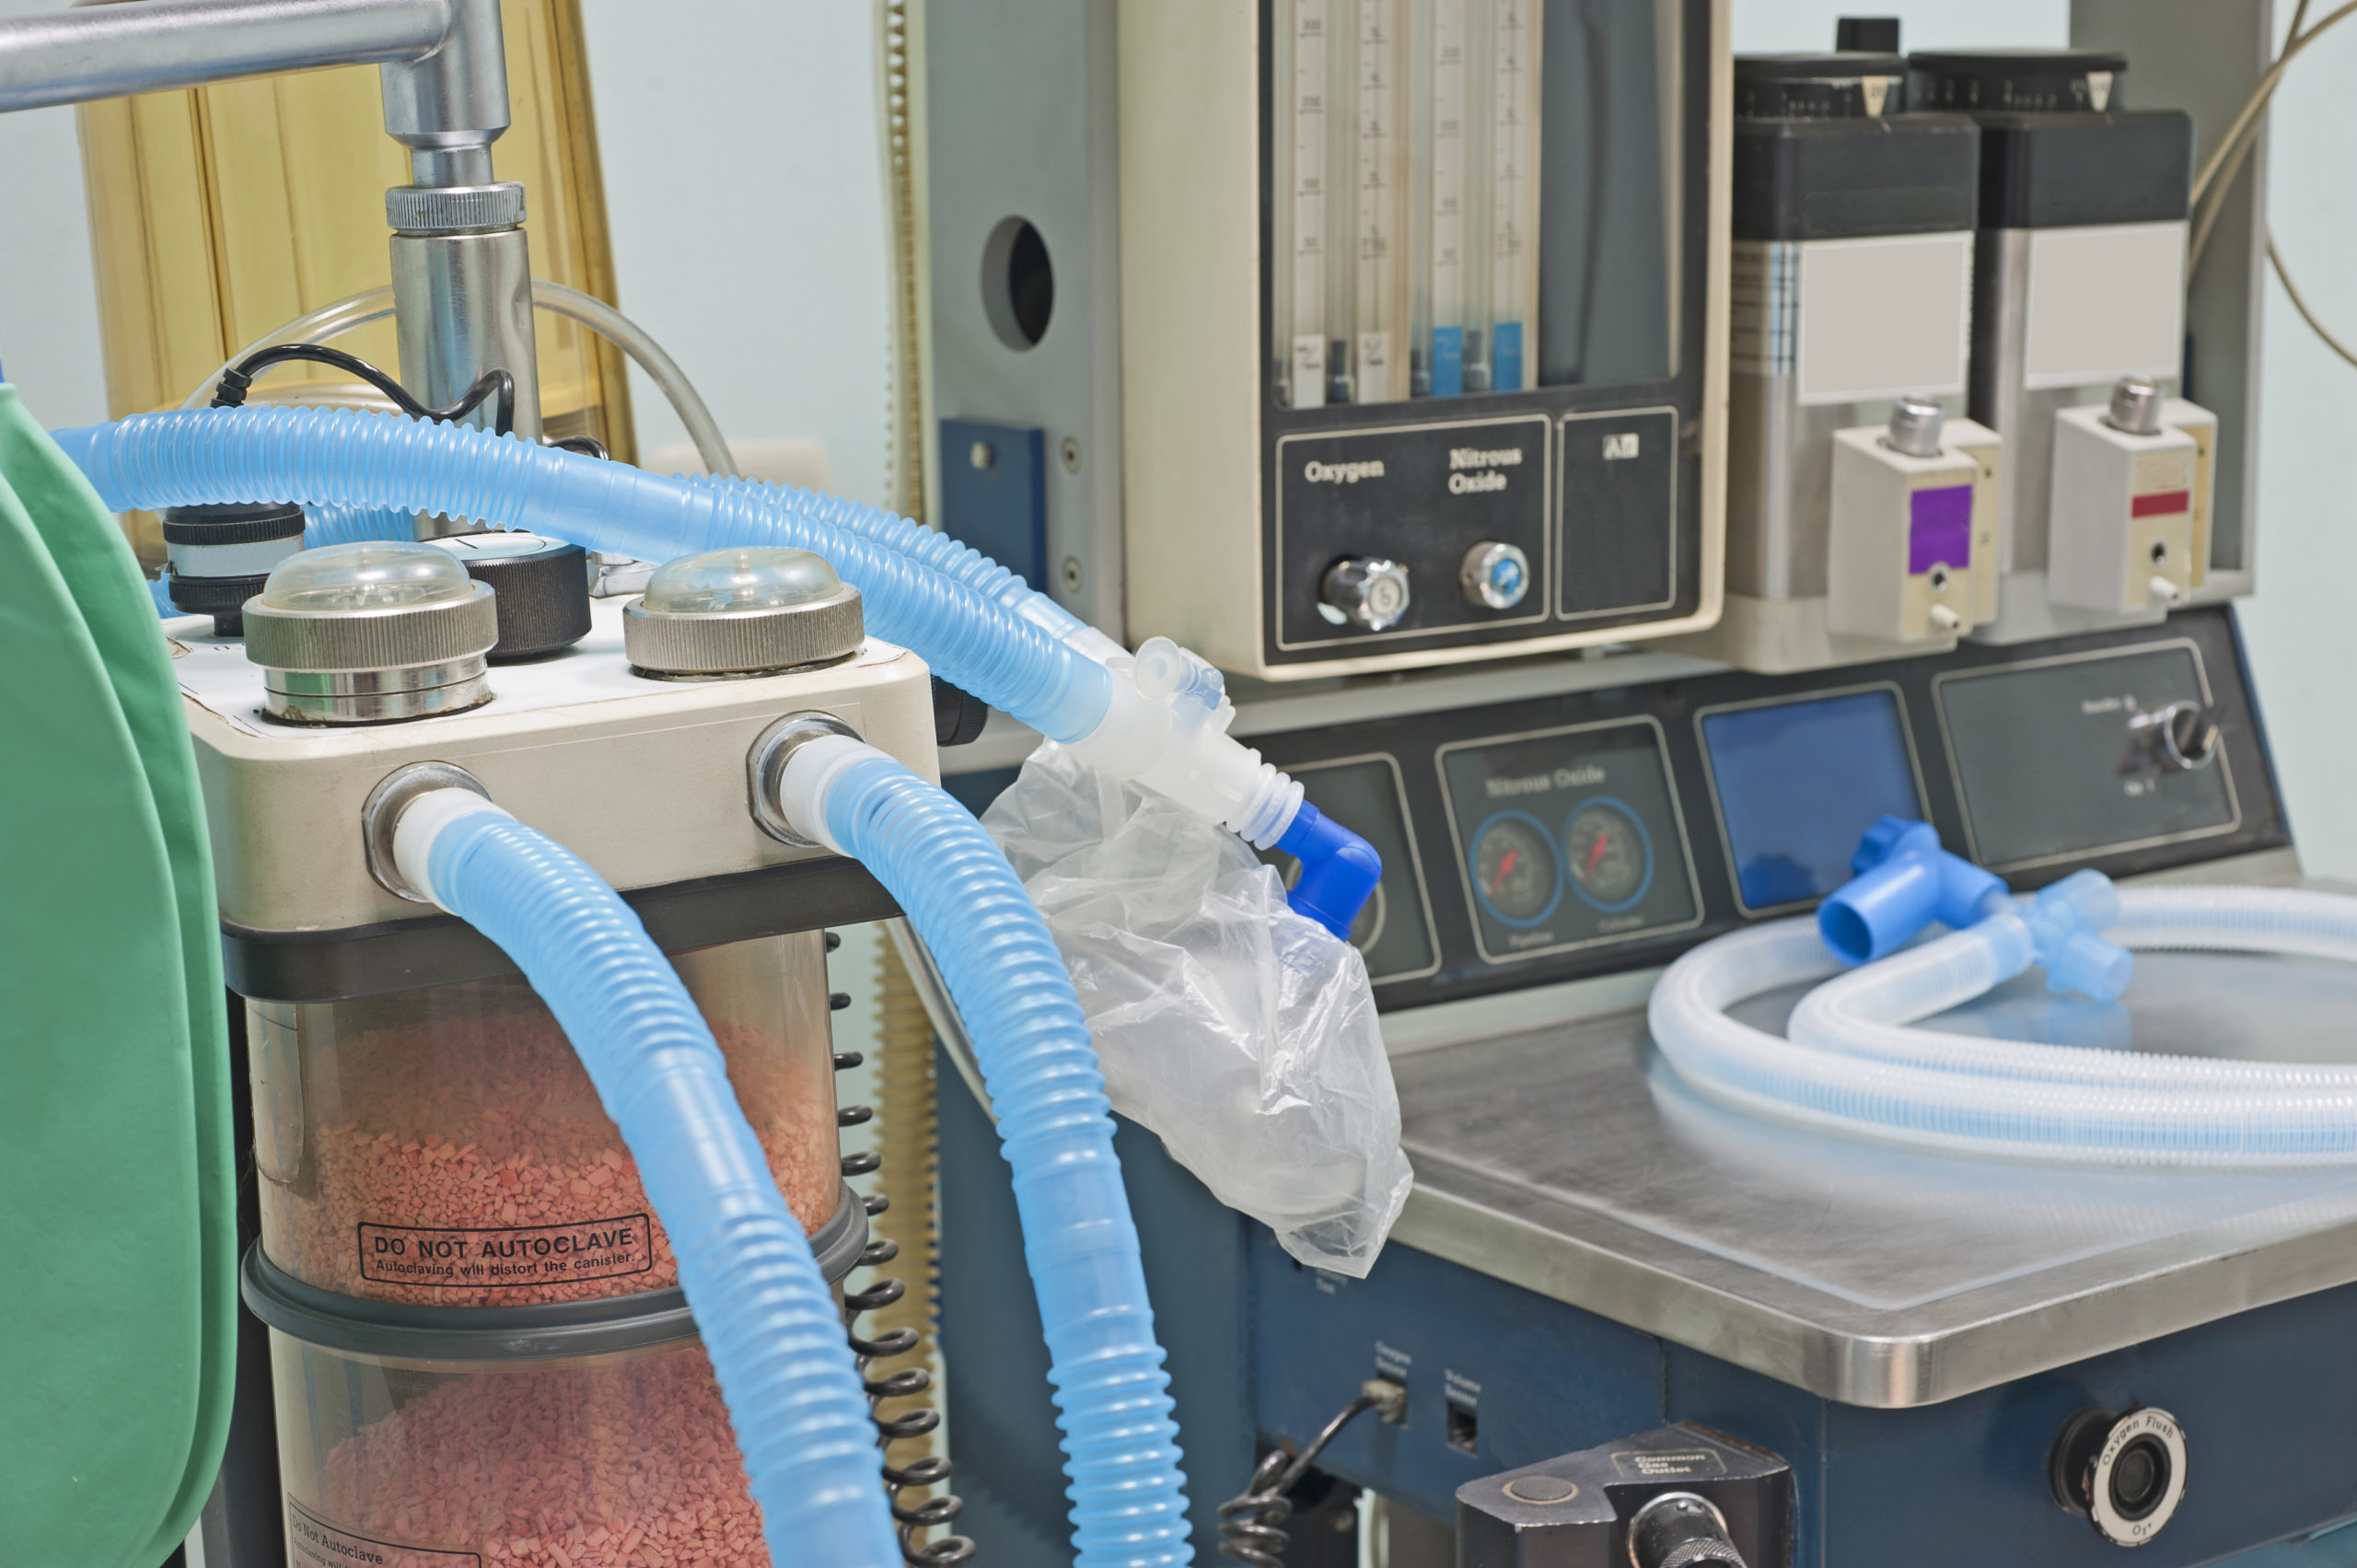 Polscy naukowcy pracują nad tym, żeby 1 respirator mógł obsługiwać 2 pacjentów